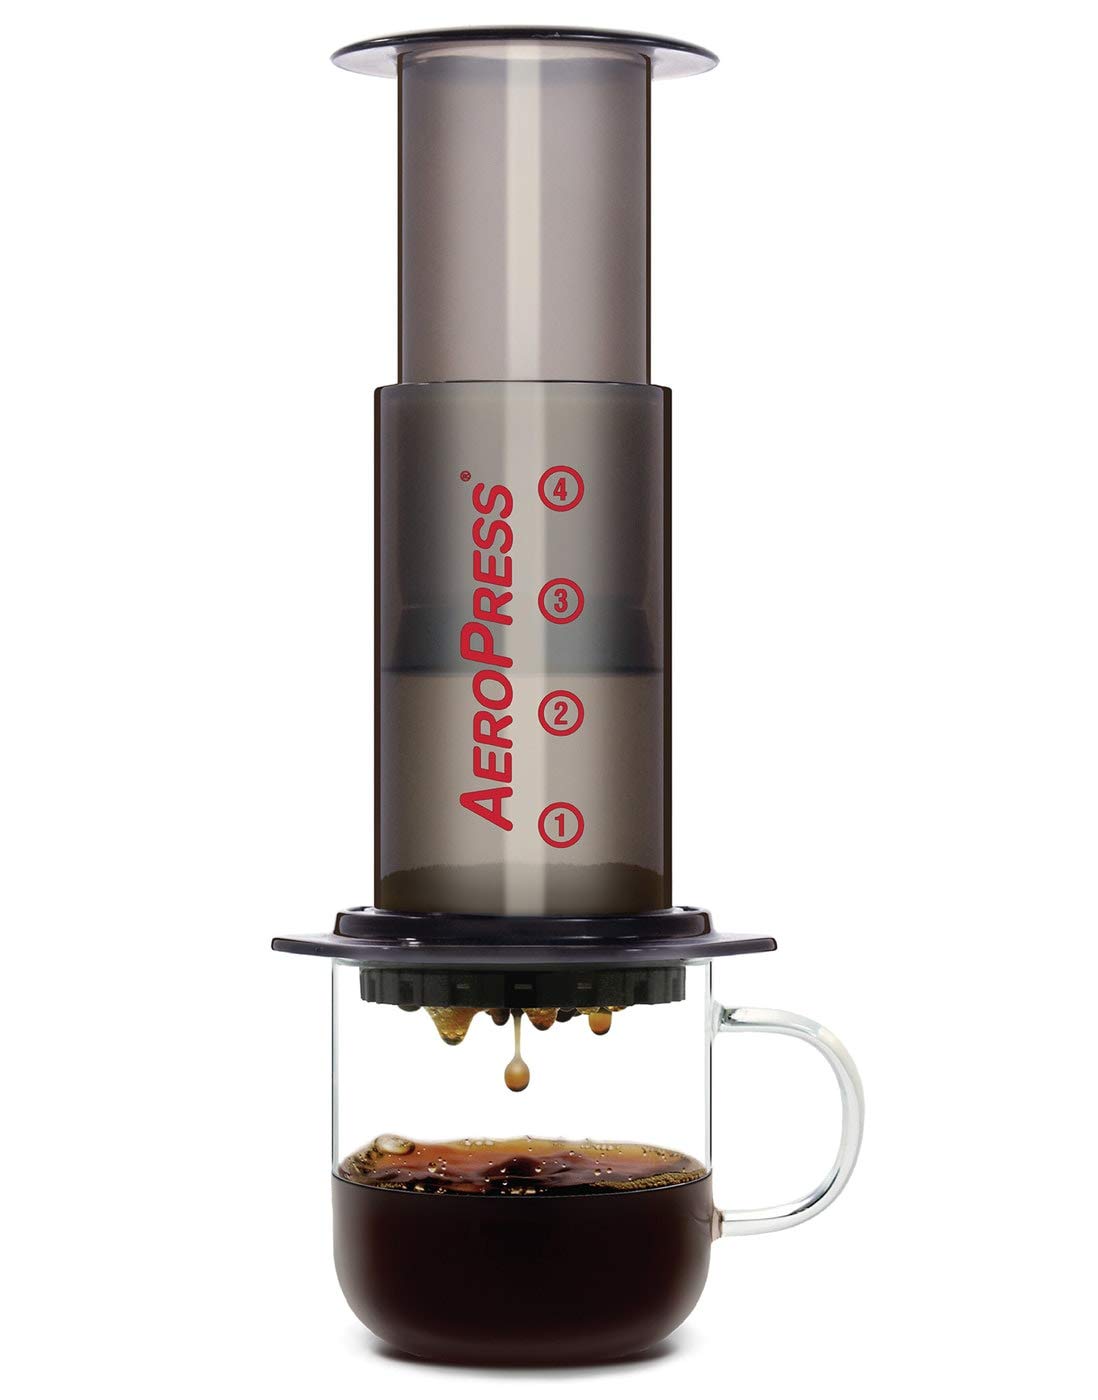 Coffee and Espresso Maker AeroPress 1 to 3 Cups Per Pressing